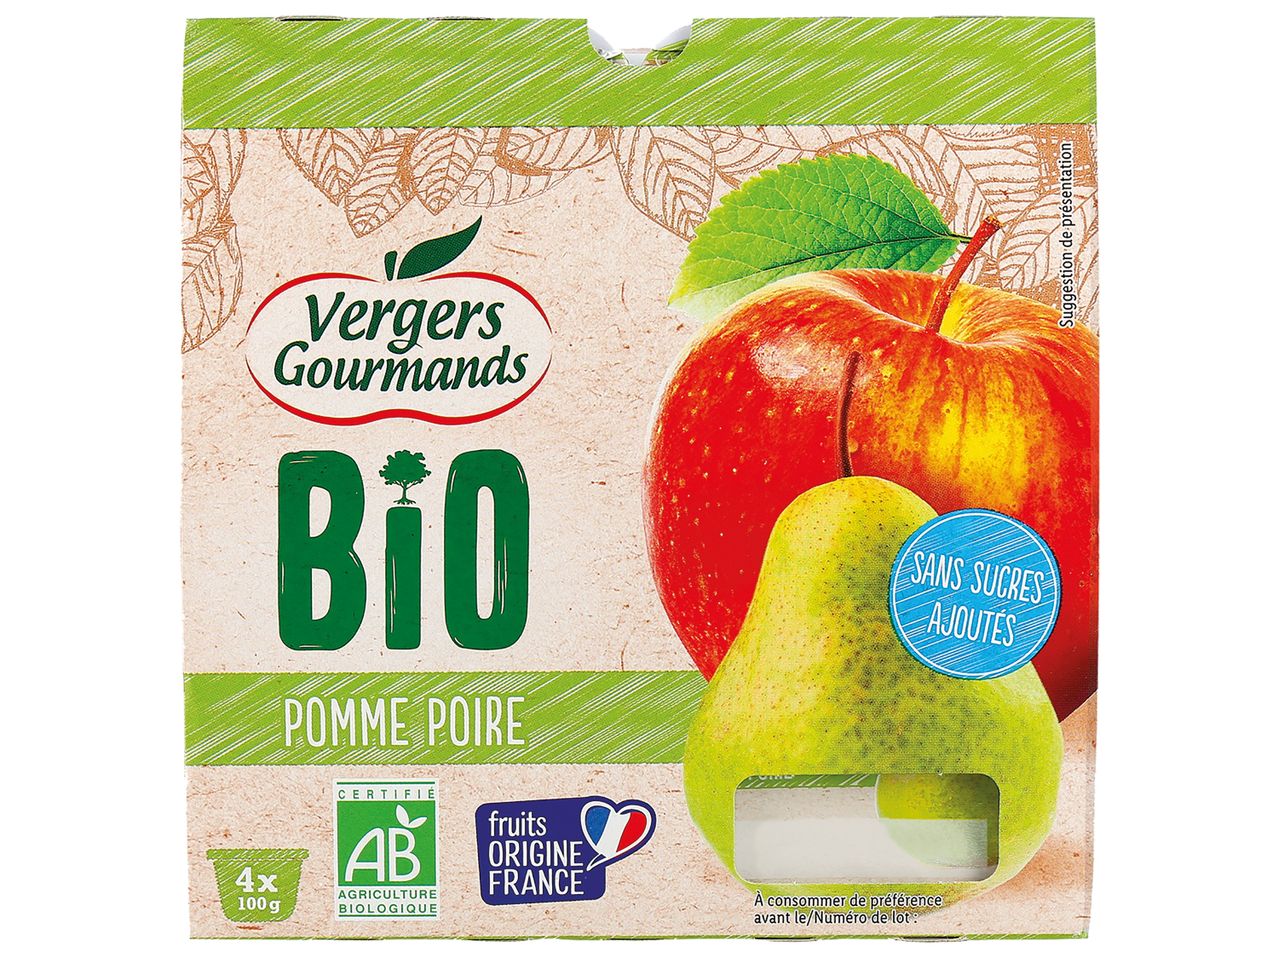 Compote pomme Bio sans sucres ajoutés en vente chez Lidl